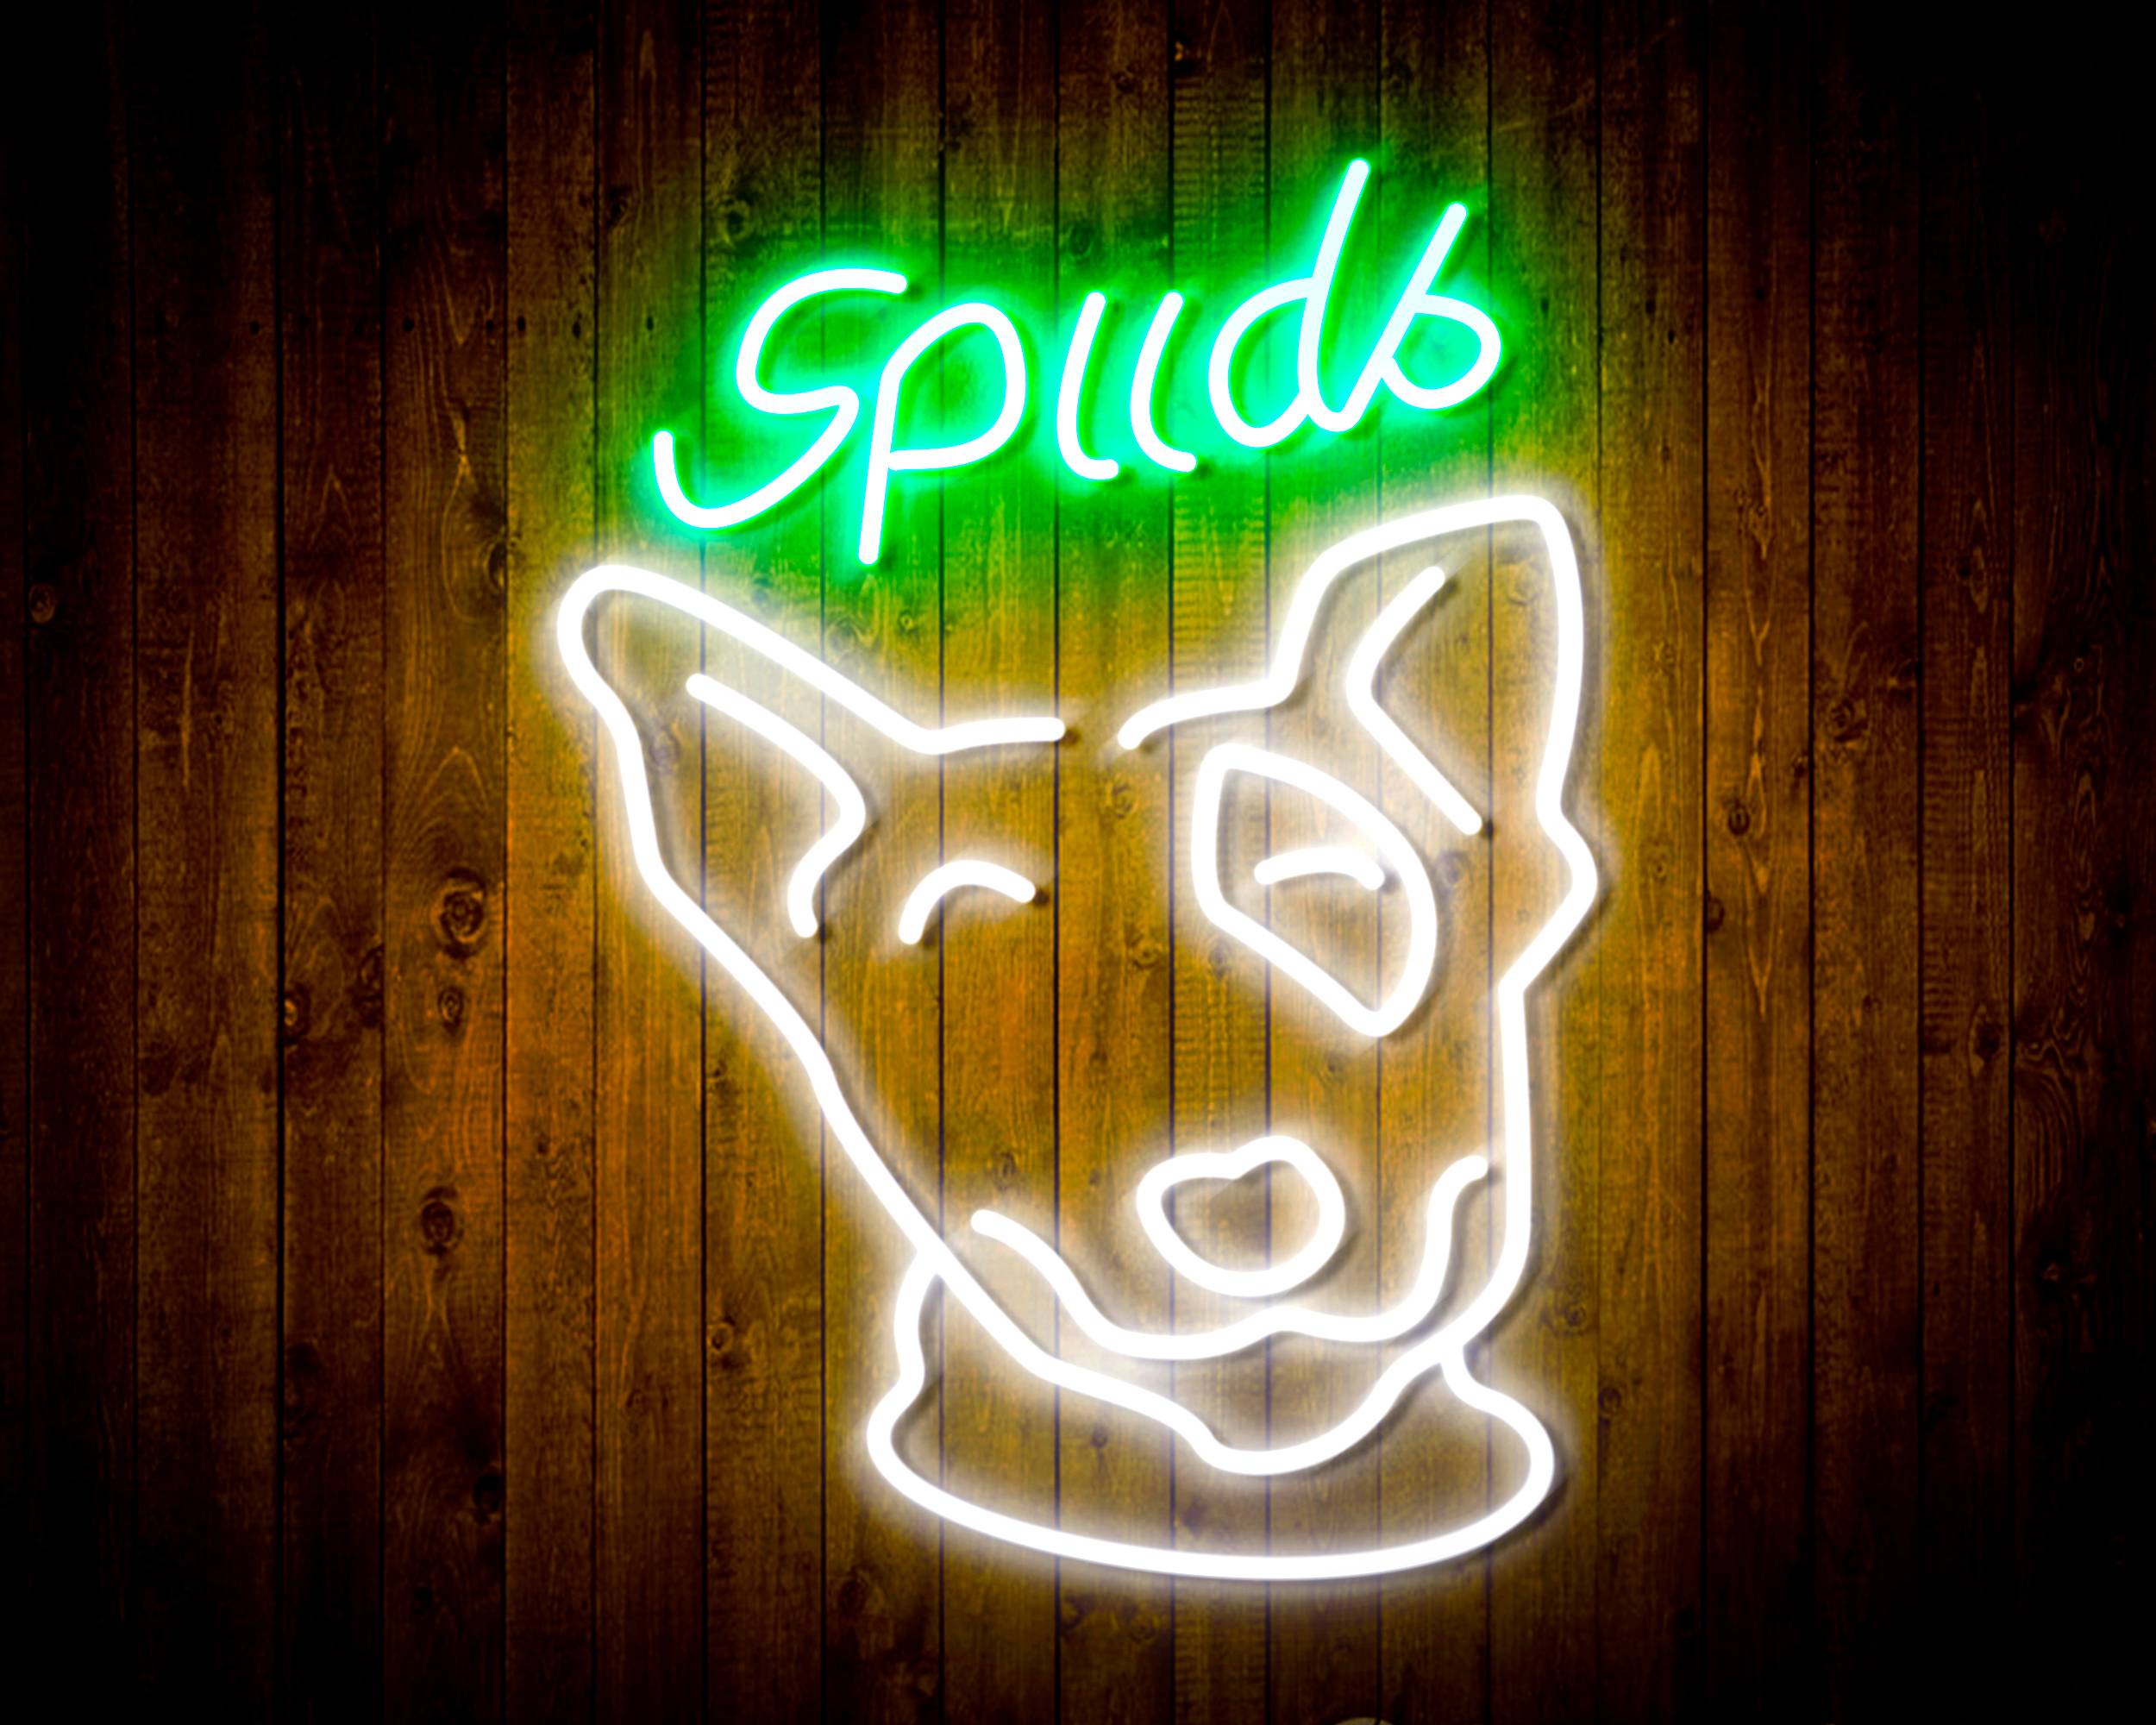 Spuds Bud Light Bar Neon LED Sign